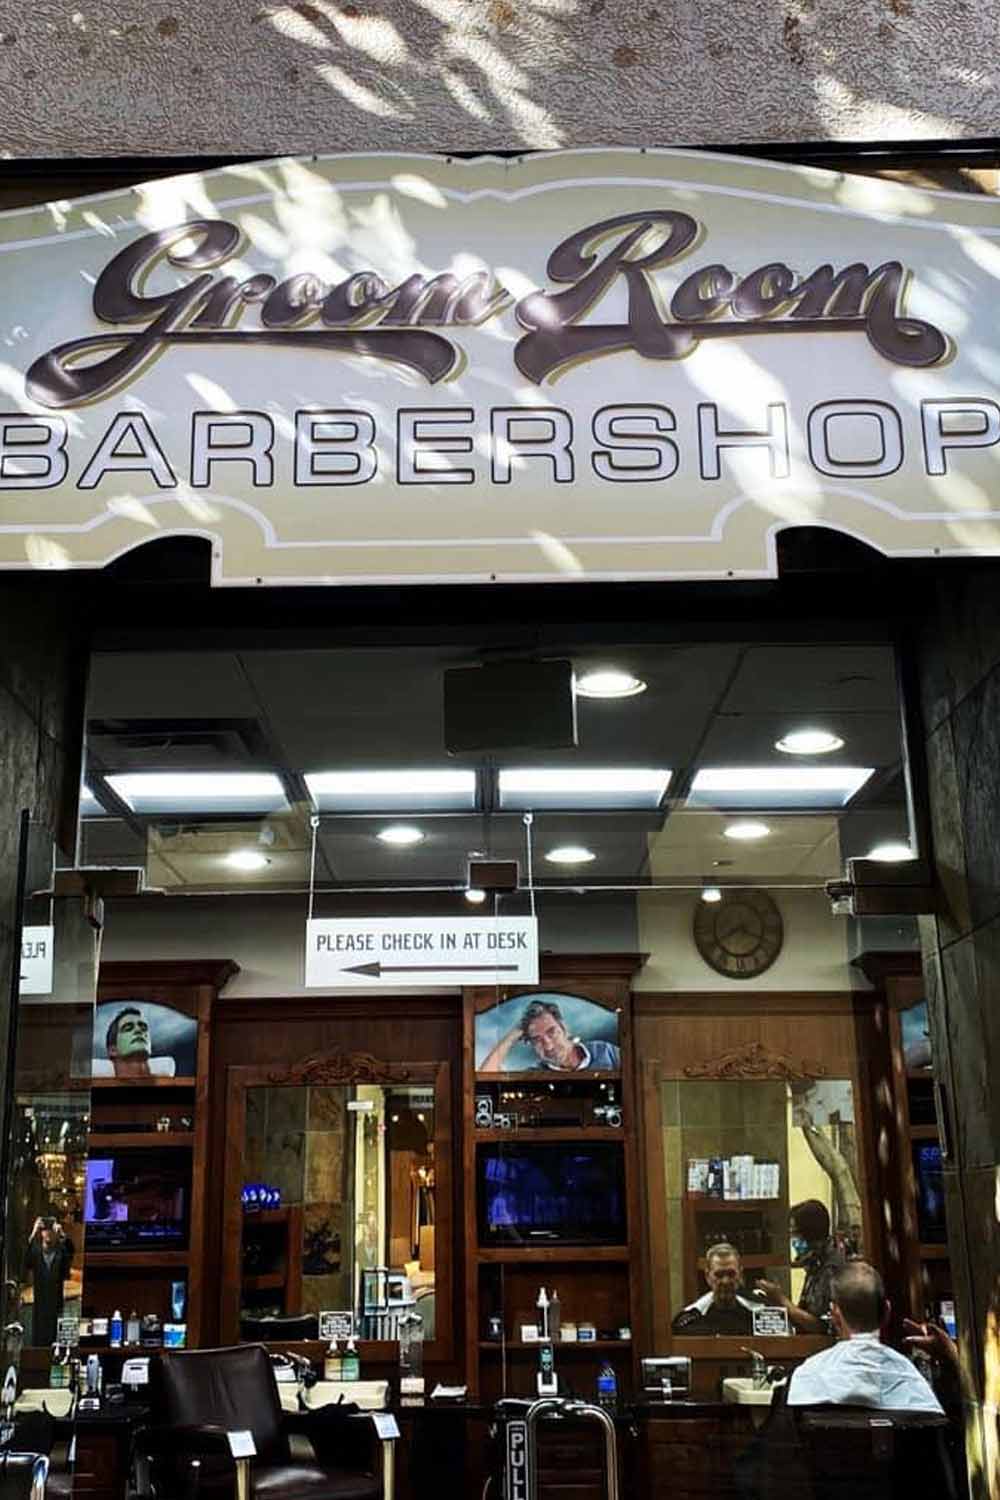 Groom Room Barbershop 1